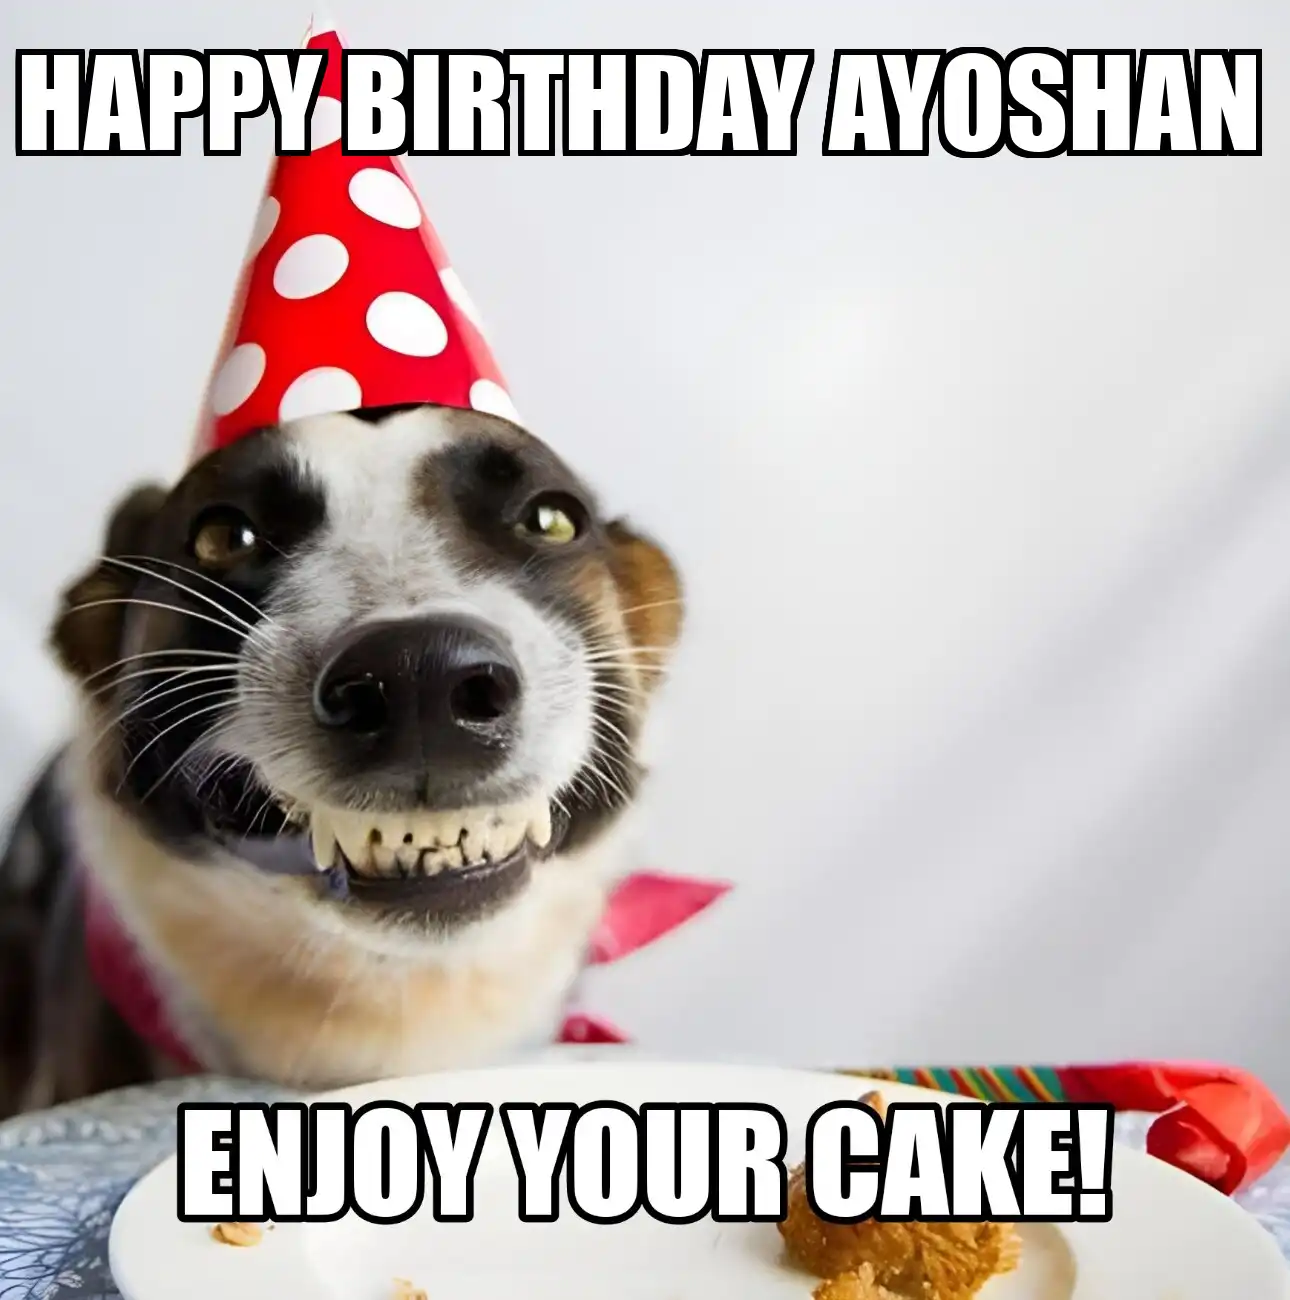 Happy Birthday Ayoshan Enjoy Your Cake Dog Meme